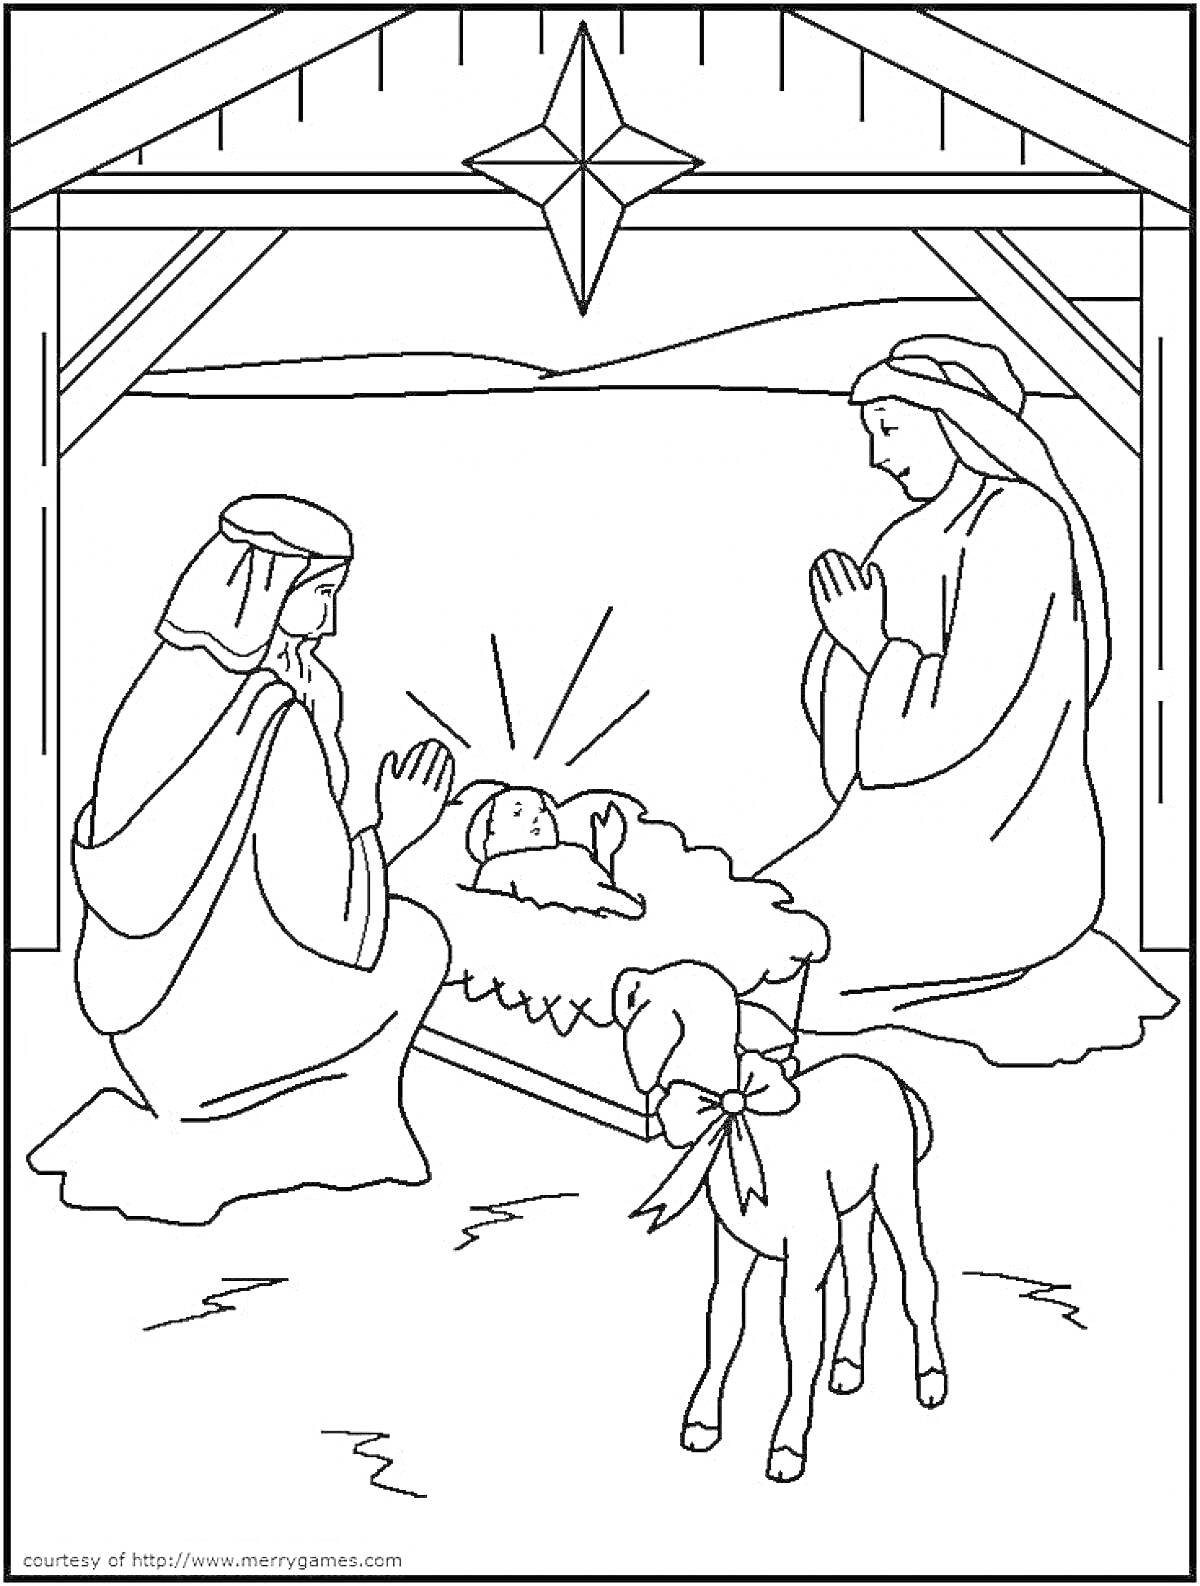 Раскраска Рождественский вертеп с младенцем Иисусом, Девой Марией, Иосифом и ягненком в хлеву